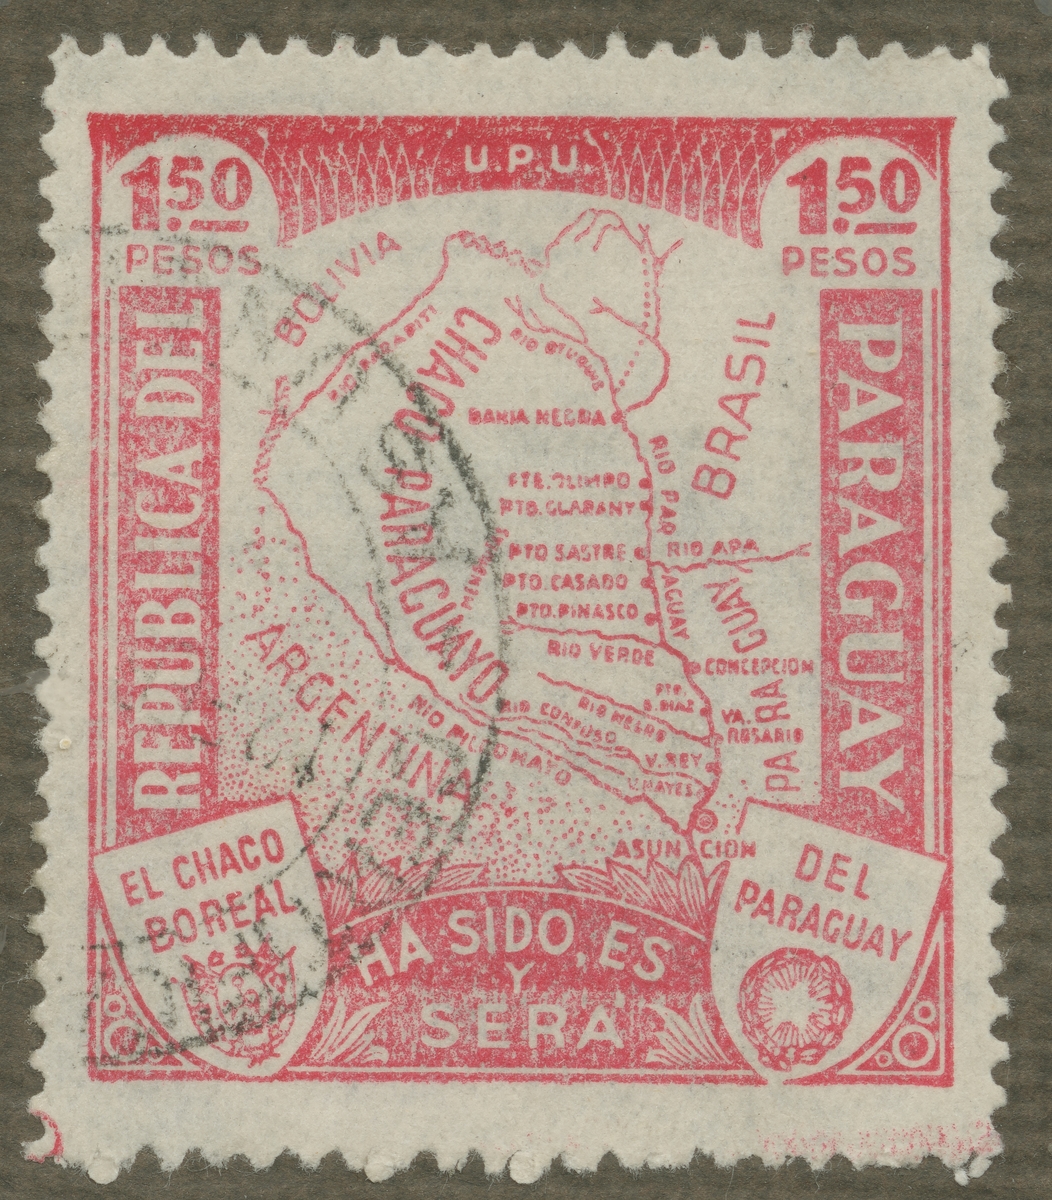 Frimärke ur Gösta Bodmans filatelistiska motivsamling, påbörjad 1950.
Frimärke från Paraguay, 1935. Motiv av karta över Paraguay, Grand Chaco.